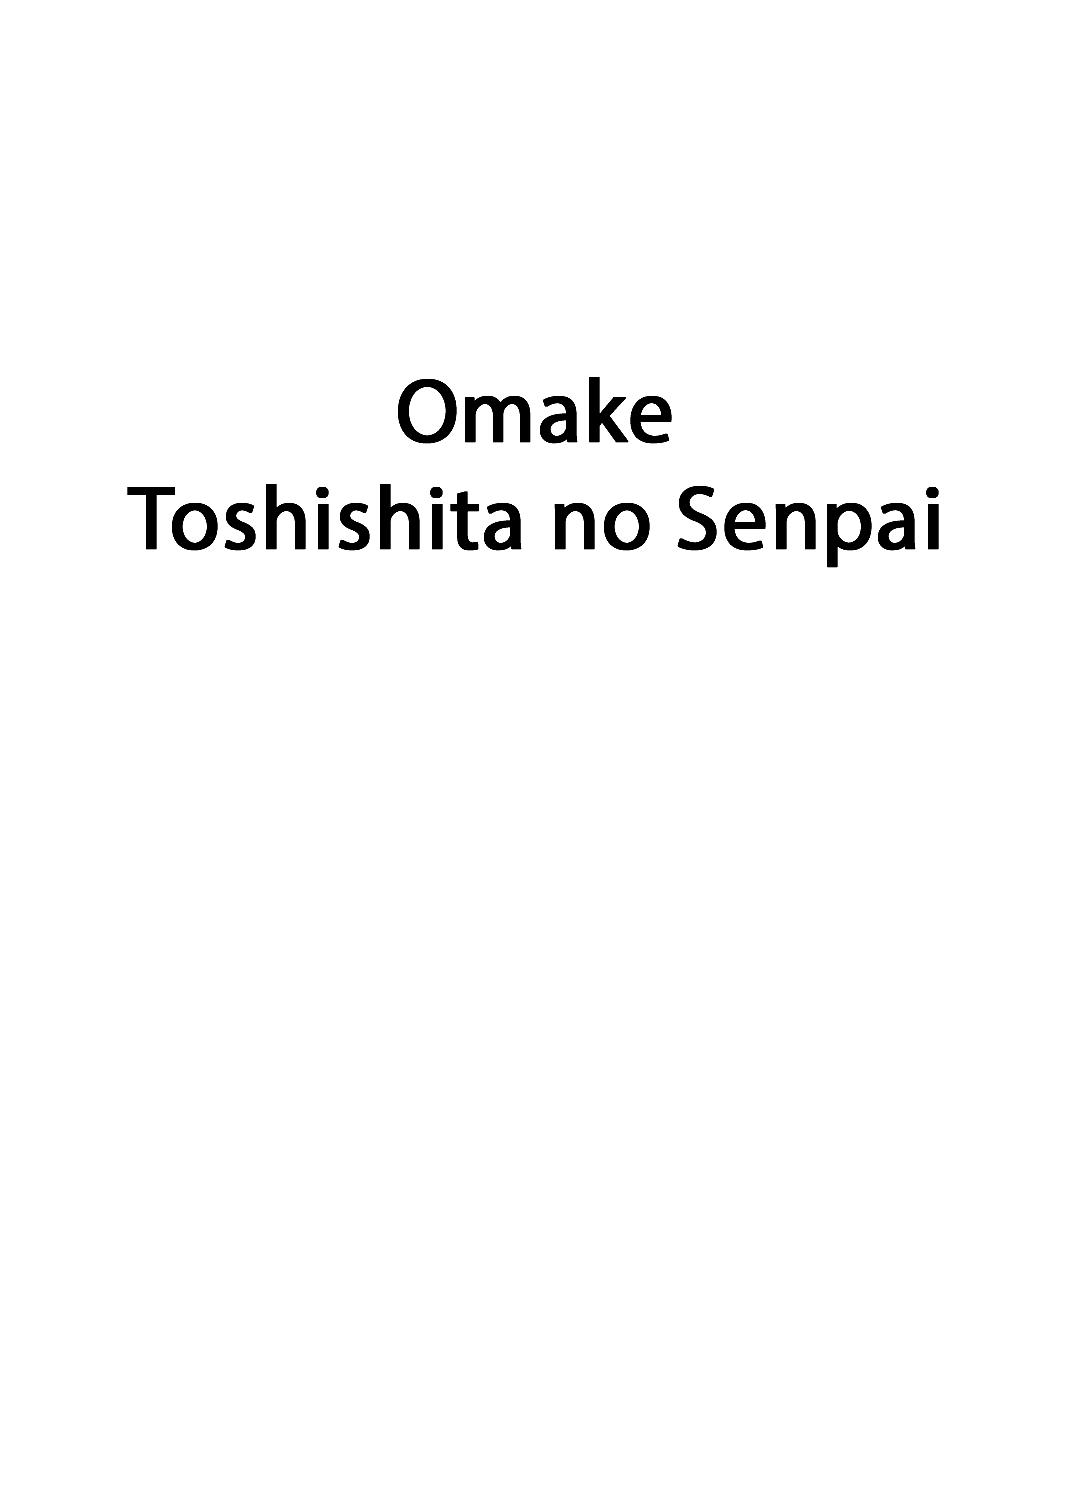 Omake Toshishita no Senpai 0